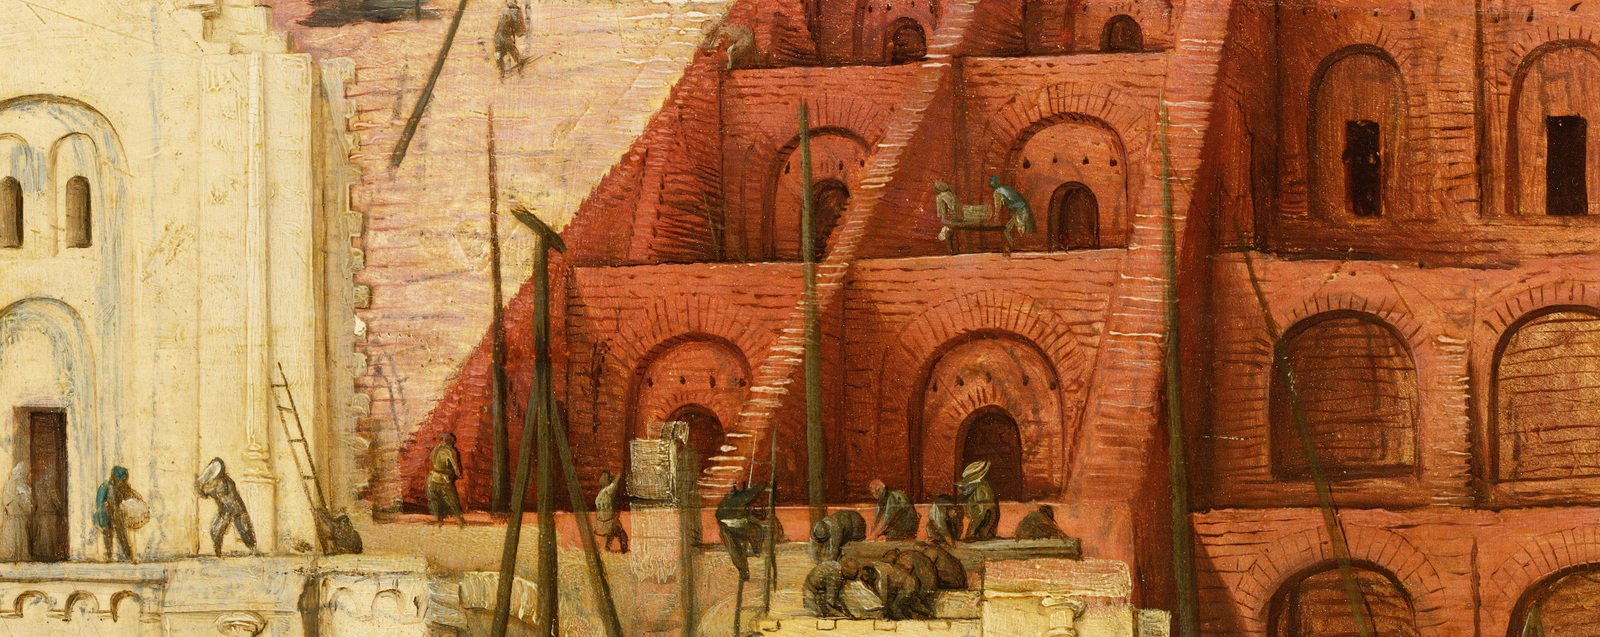 Image: Pieter Bruegel the Elder, The Tower of Babel, 1563